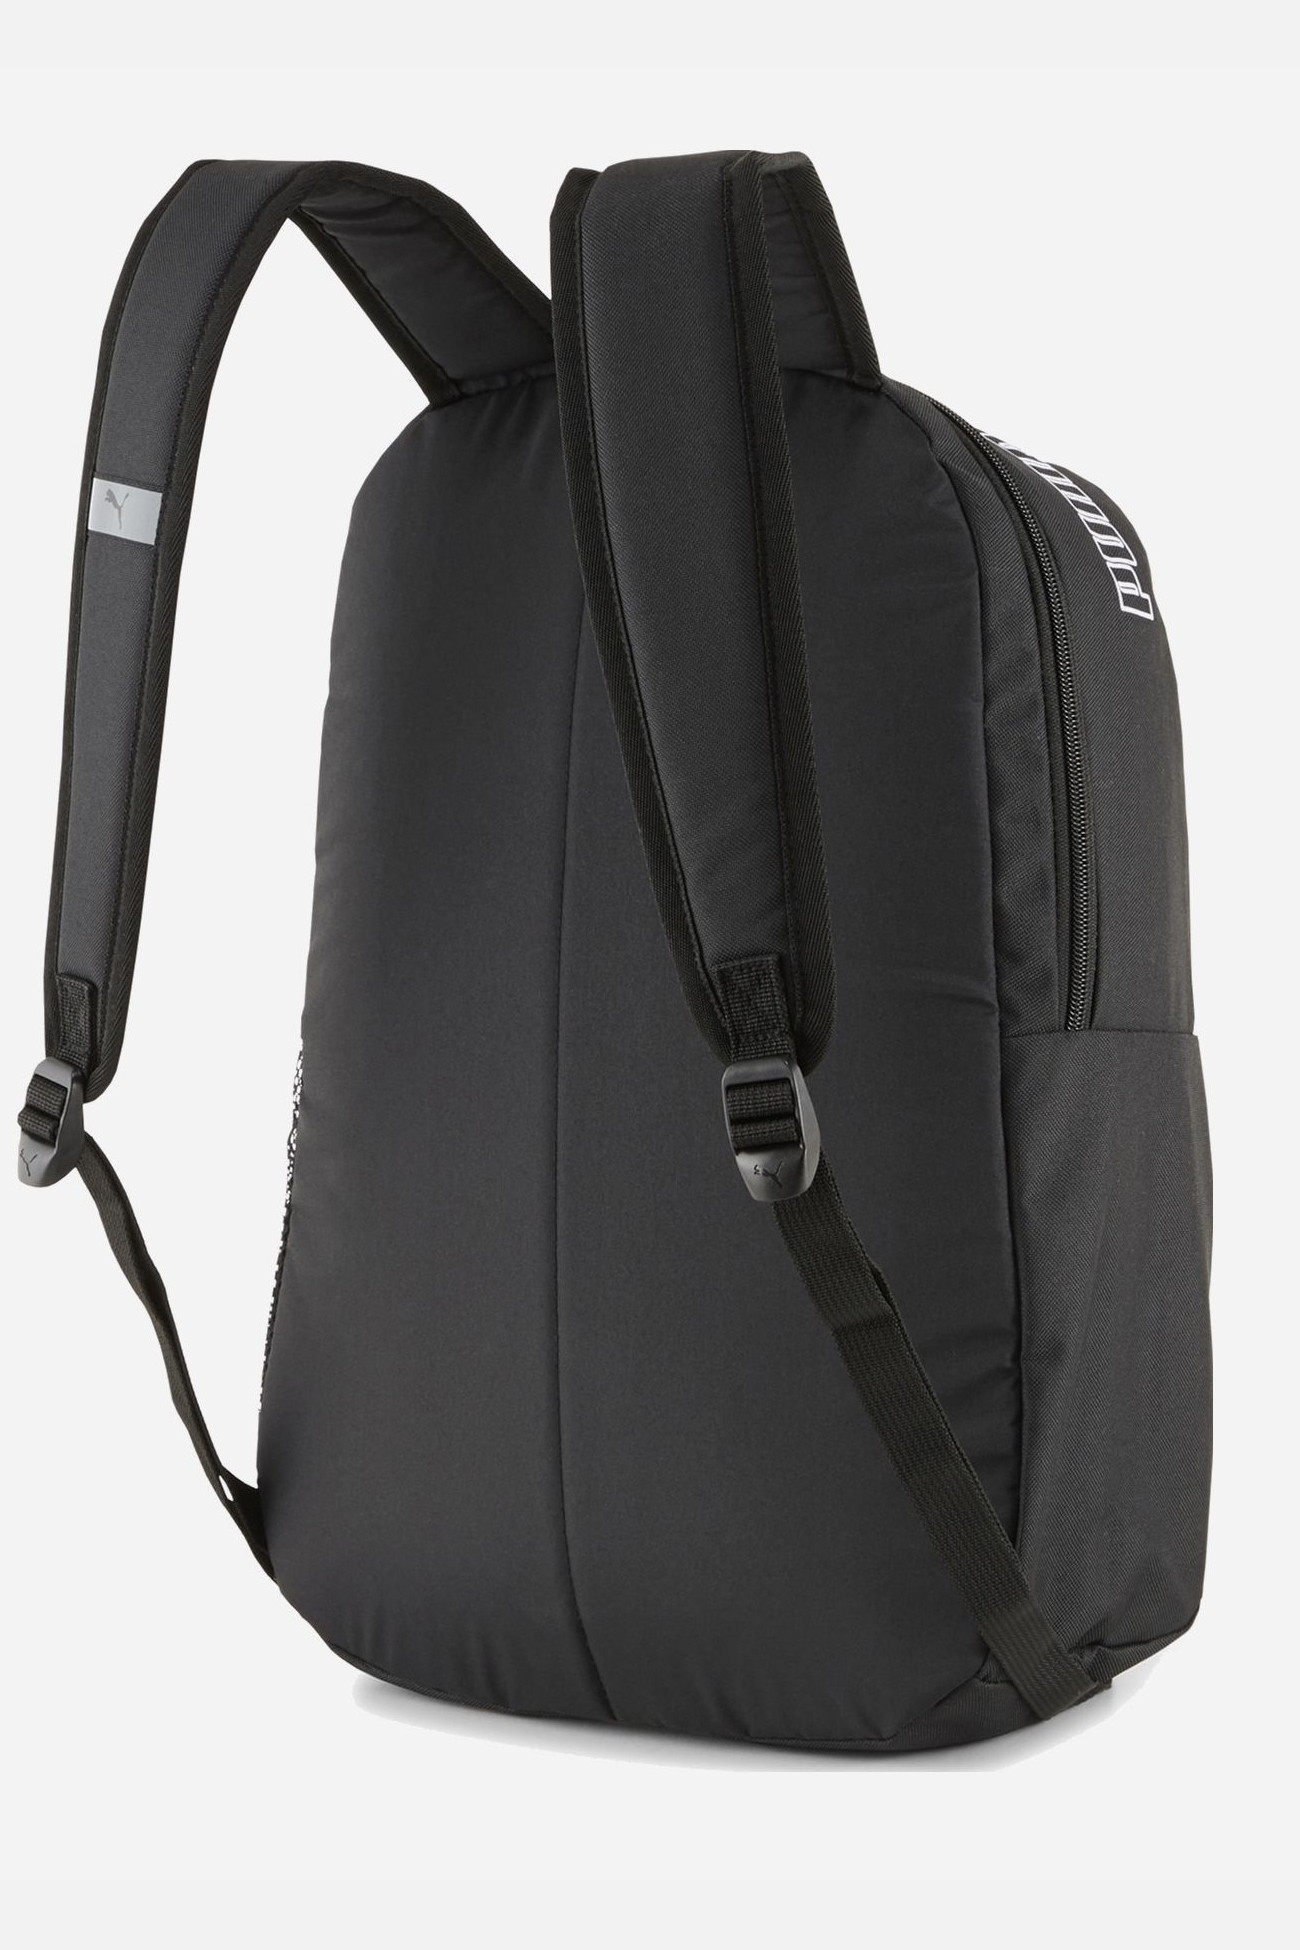 Рюкзак  Puma PUMA Phase Backpack II черный 07729501 изображение 3